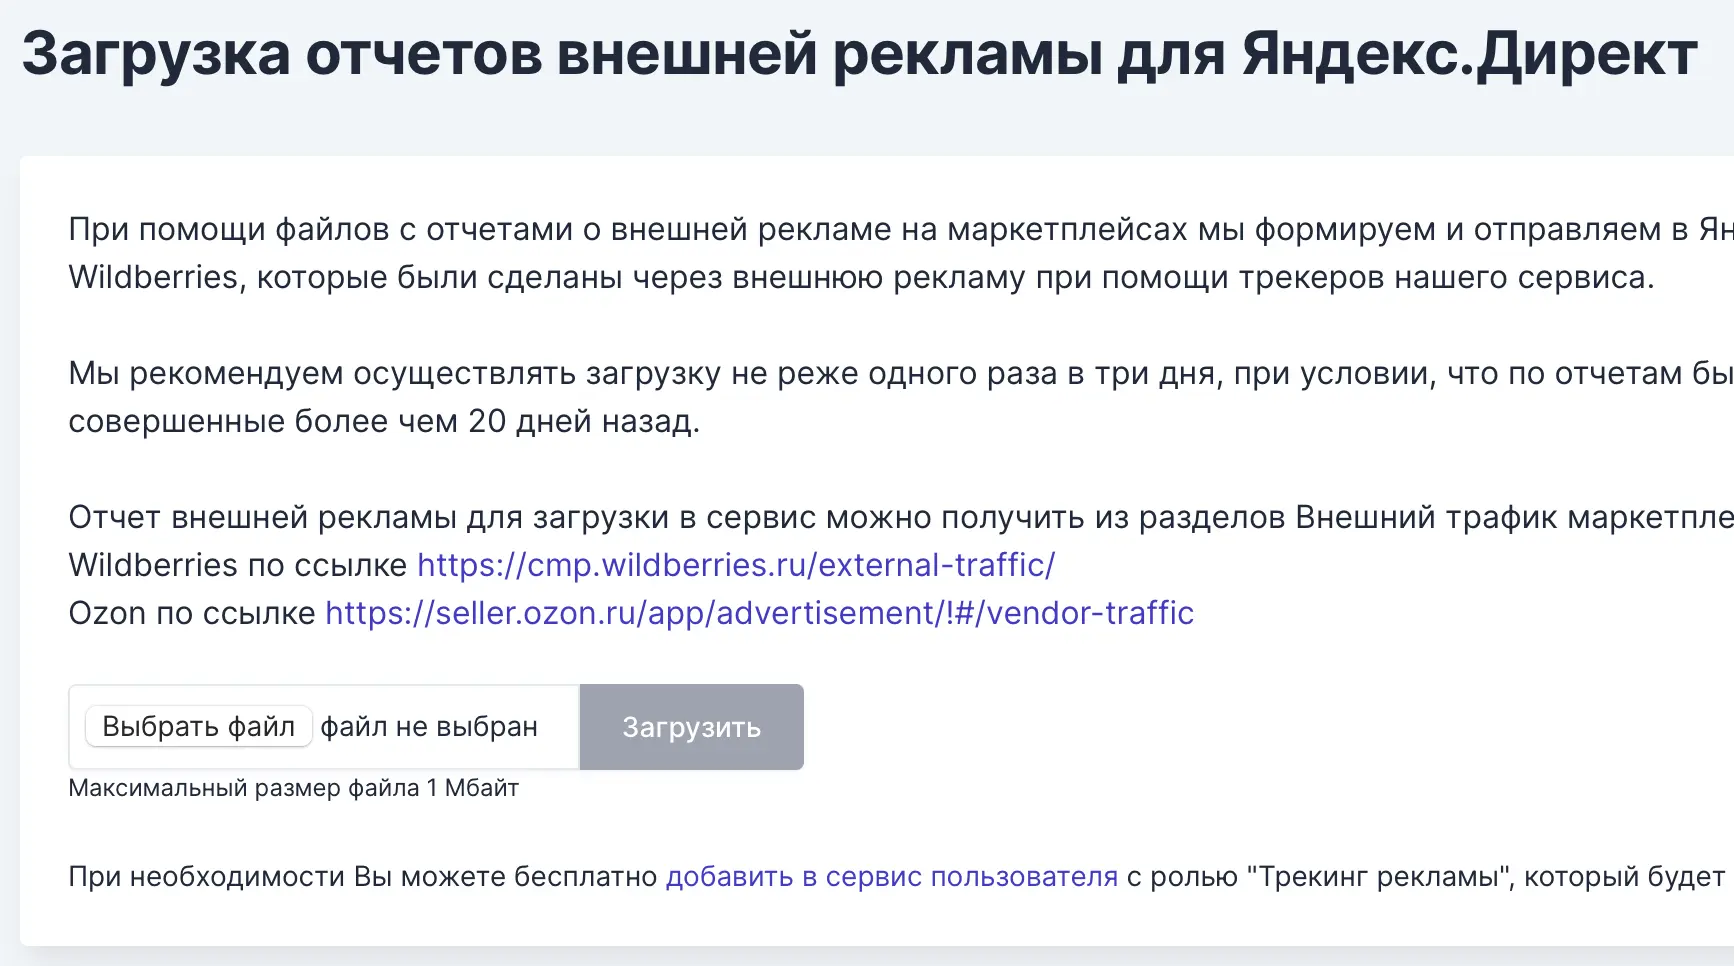 Передача данных о продажах Ваших товаров на Вайлдберриз и Озон в Яндекс Директ